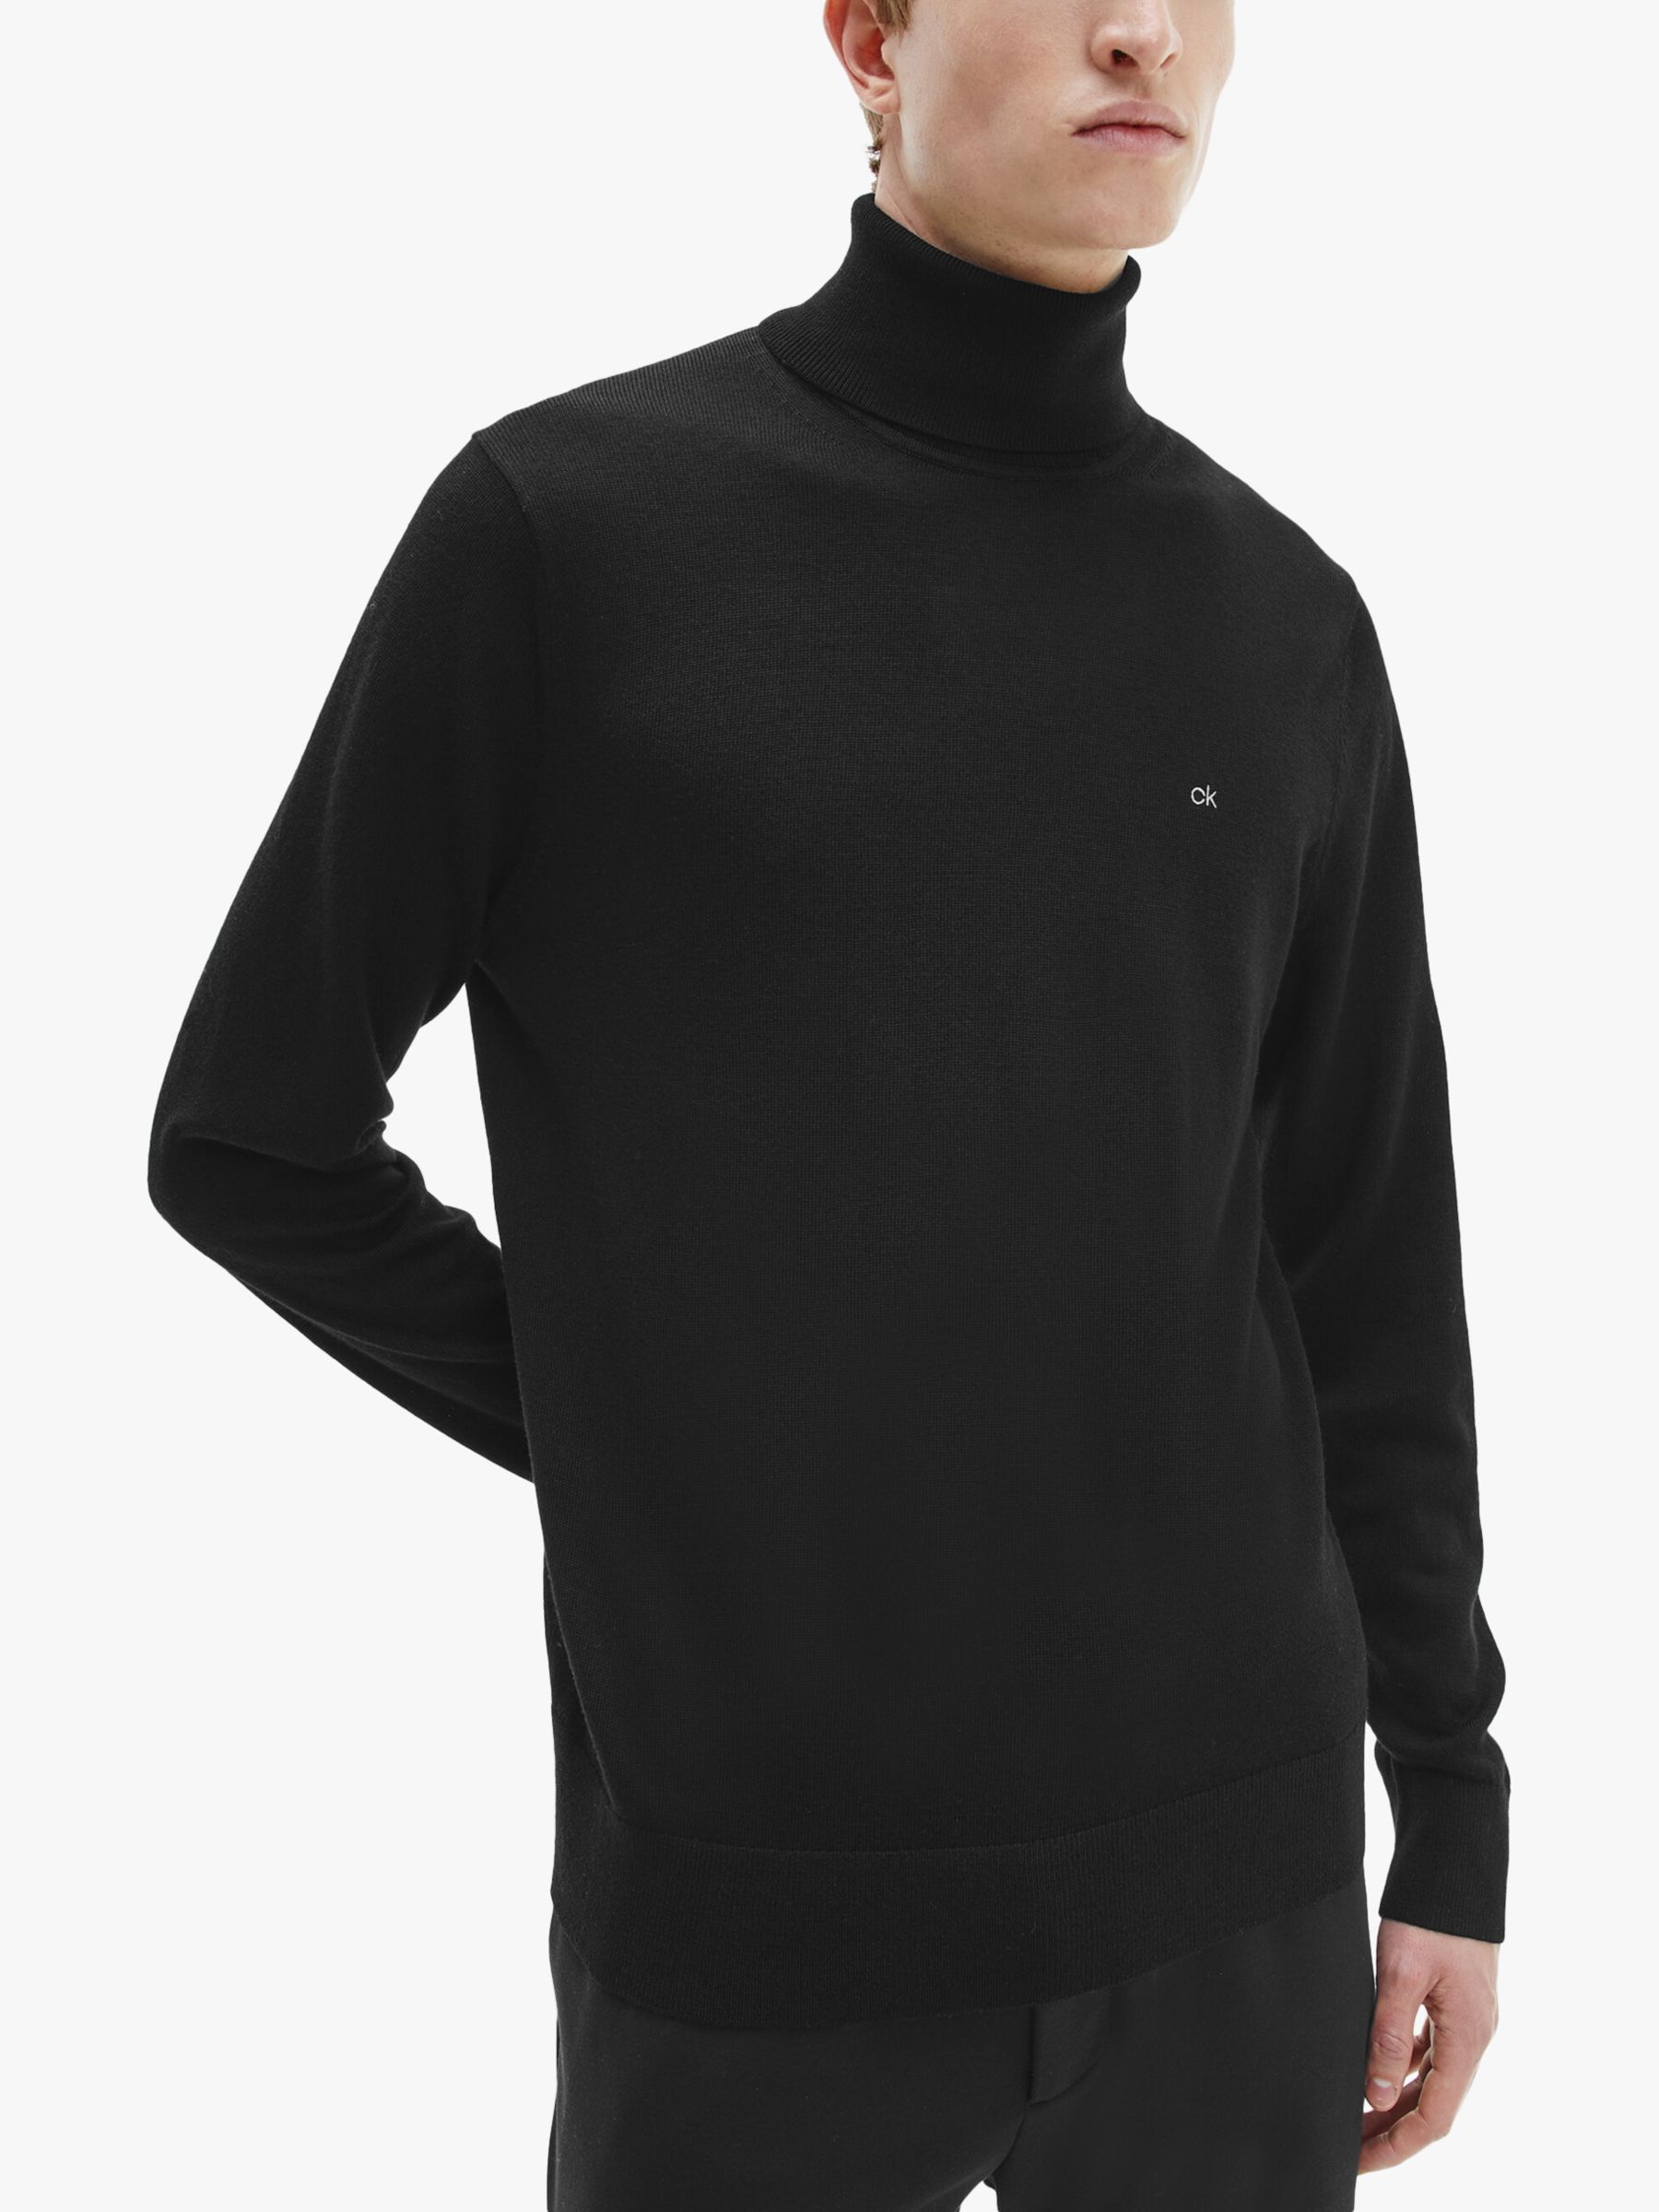 Calvin Klein Superior Wool Turtle Neck Jumper, CK Black L male 100% wool